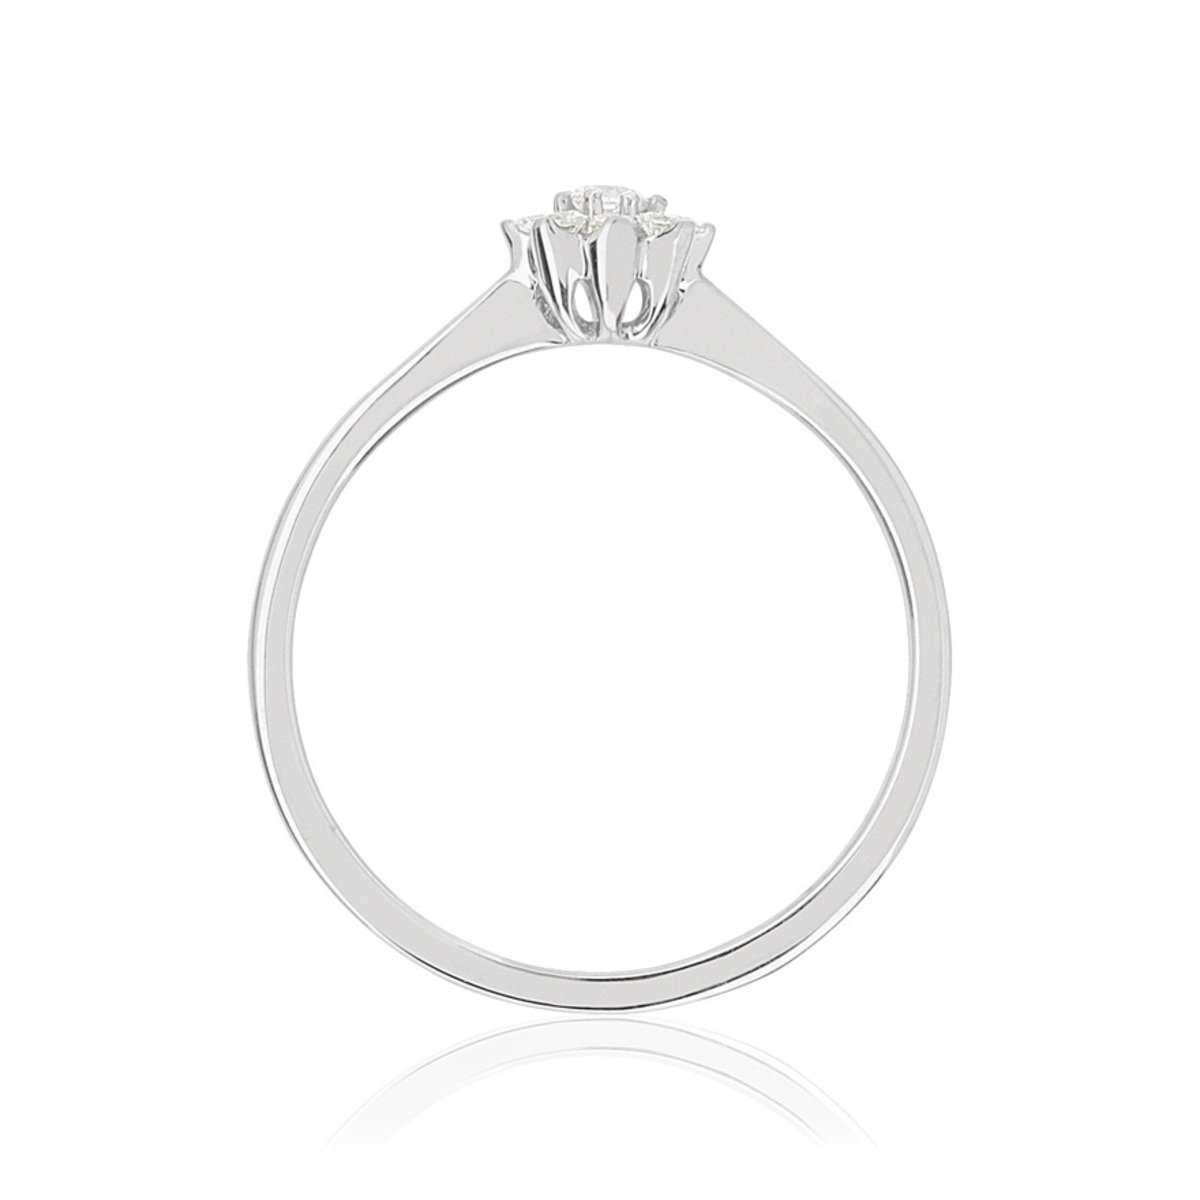 Bague or 750 blanc fleur diamants synthétiques 0,15 carat - vue 2